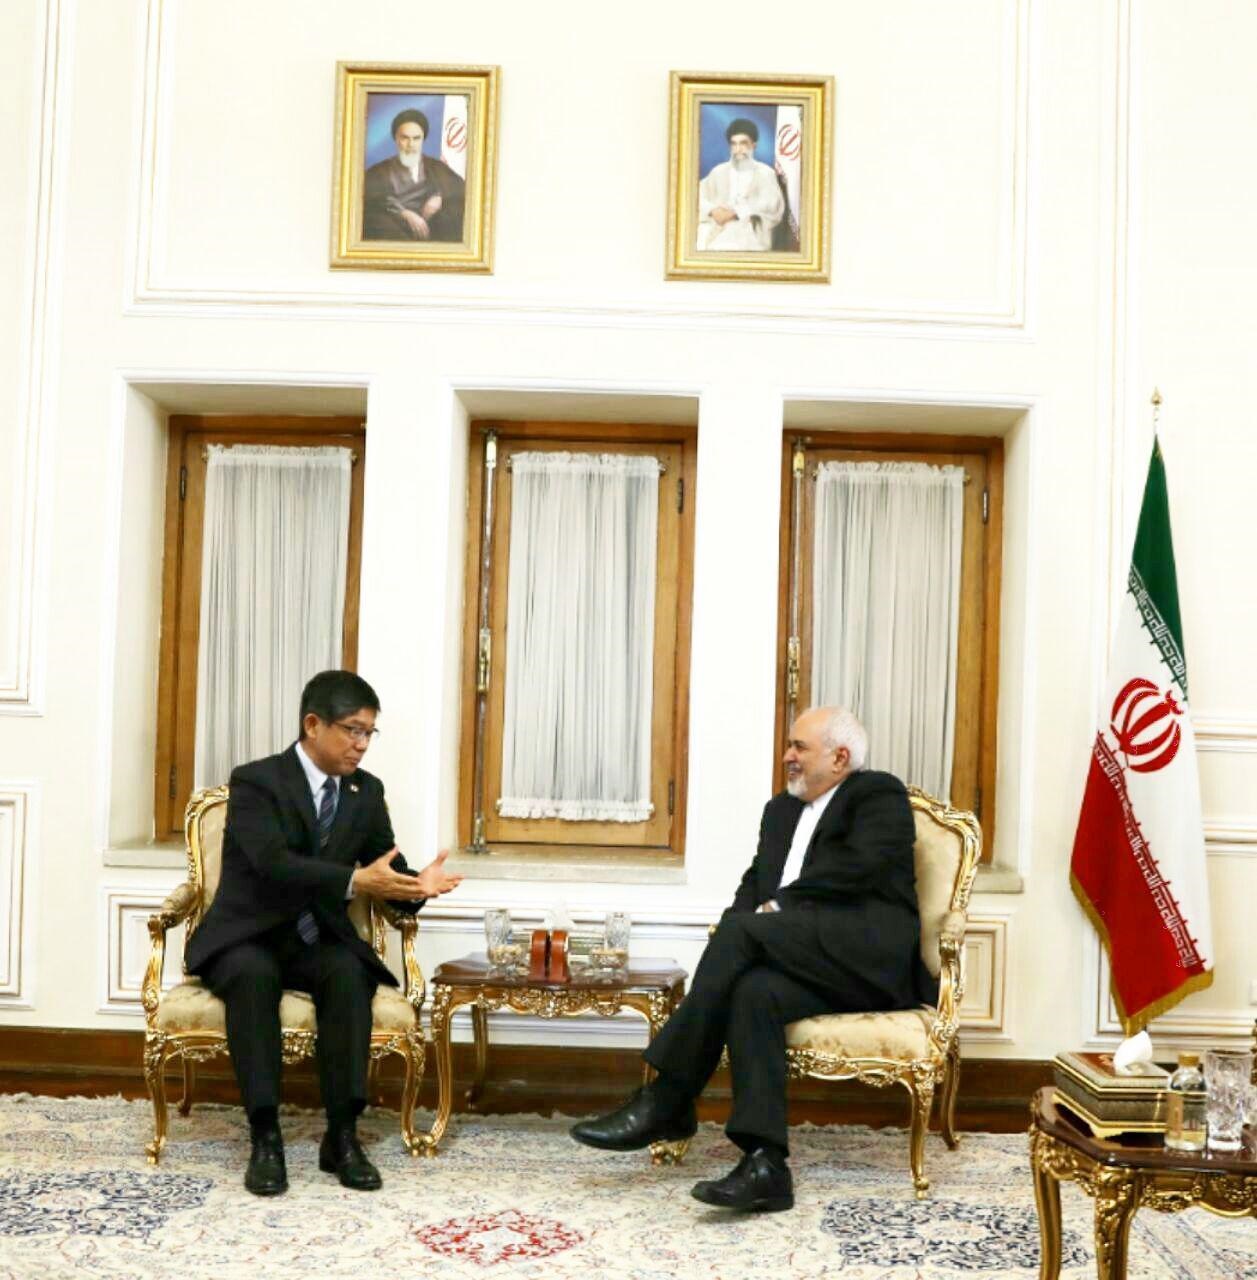 سفیر ژاپن در تهران در پایان دوره ماموریت خود در کشورمان با دکتر محمد جواد ظریف دیدار و خدا حافظی کرد